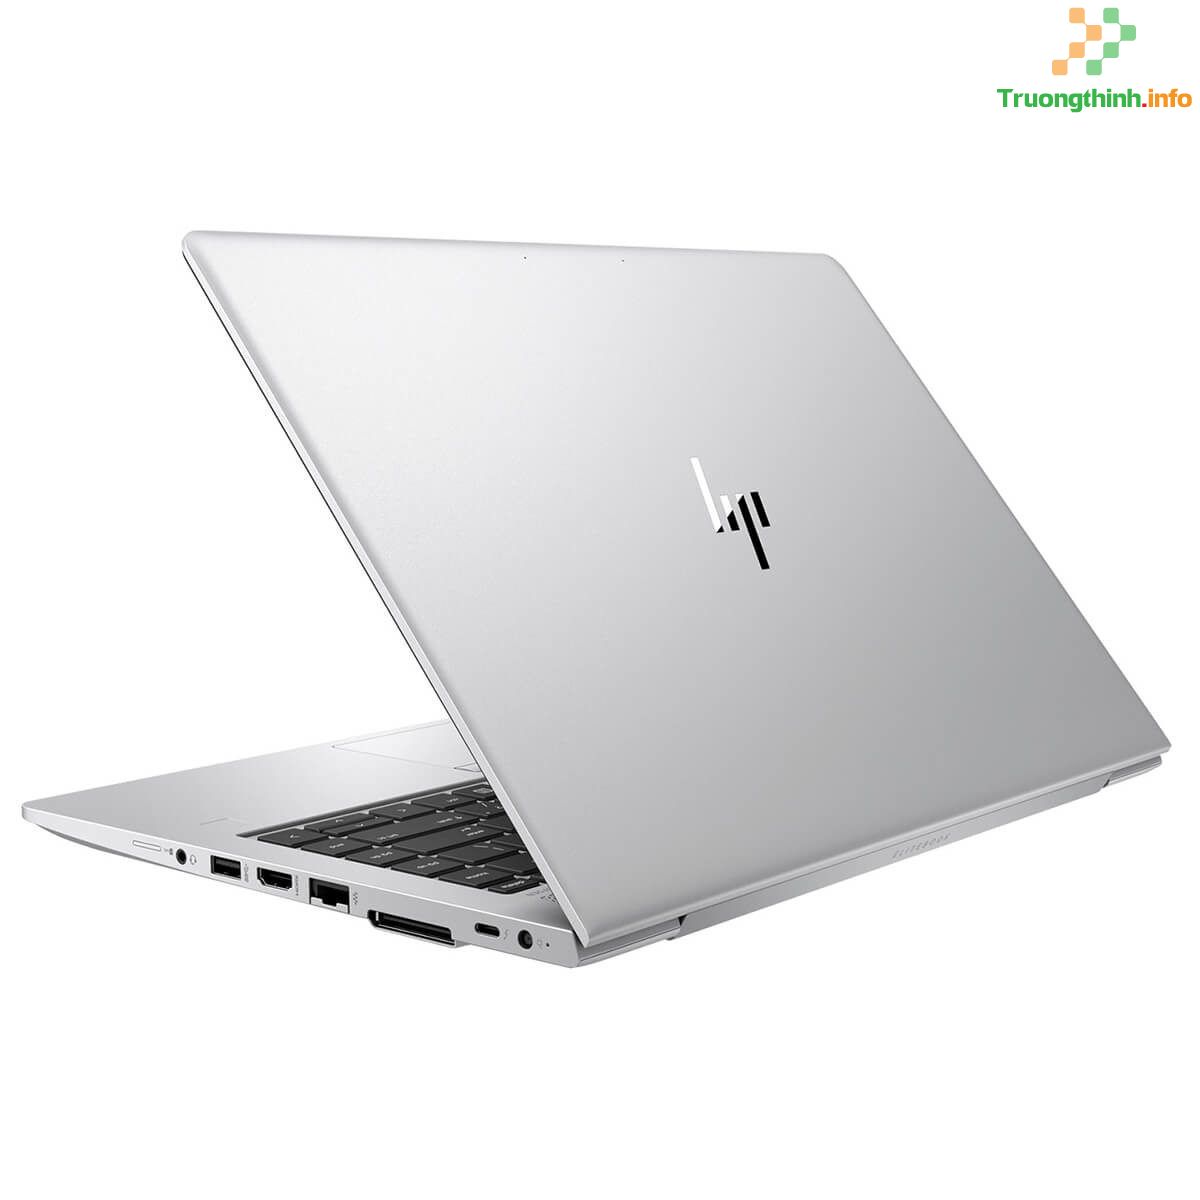 mua bán sửa thay vỏ Laptop Hp 840 G6 Giá Rẻ | Vi Tính Trường Thịnh 